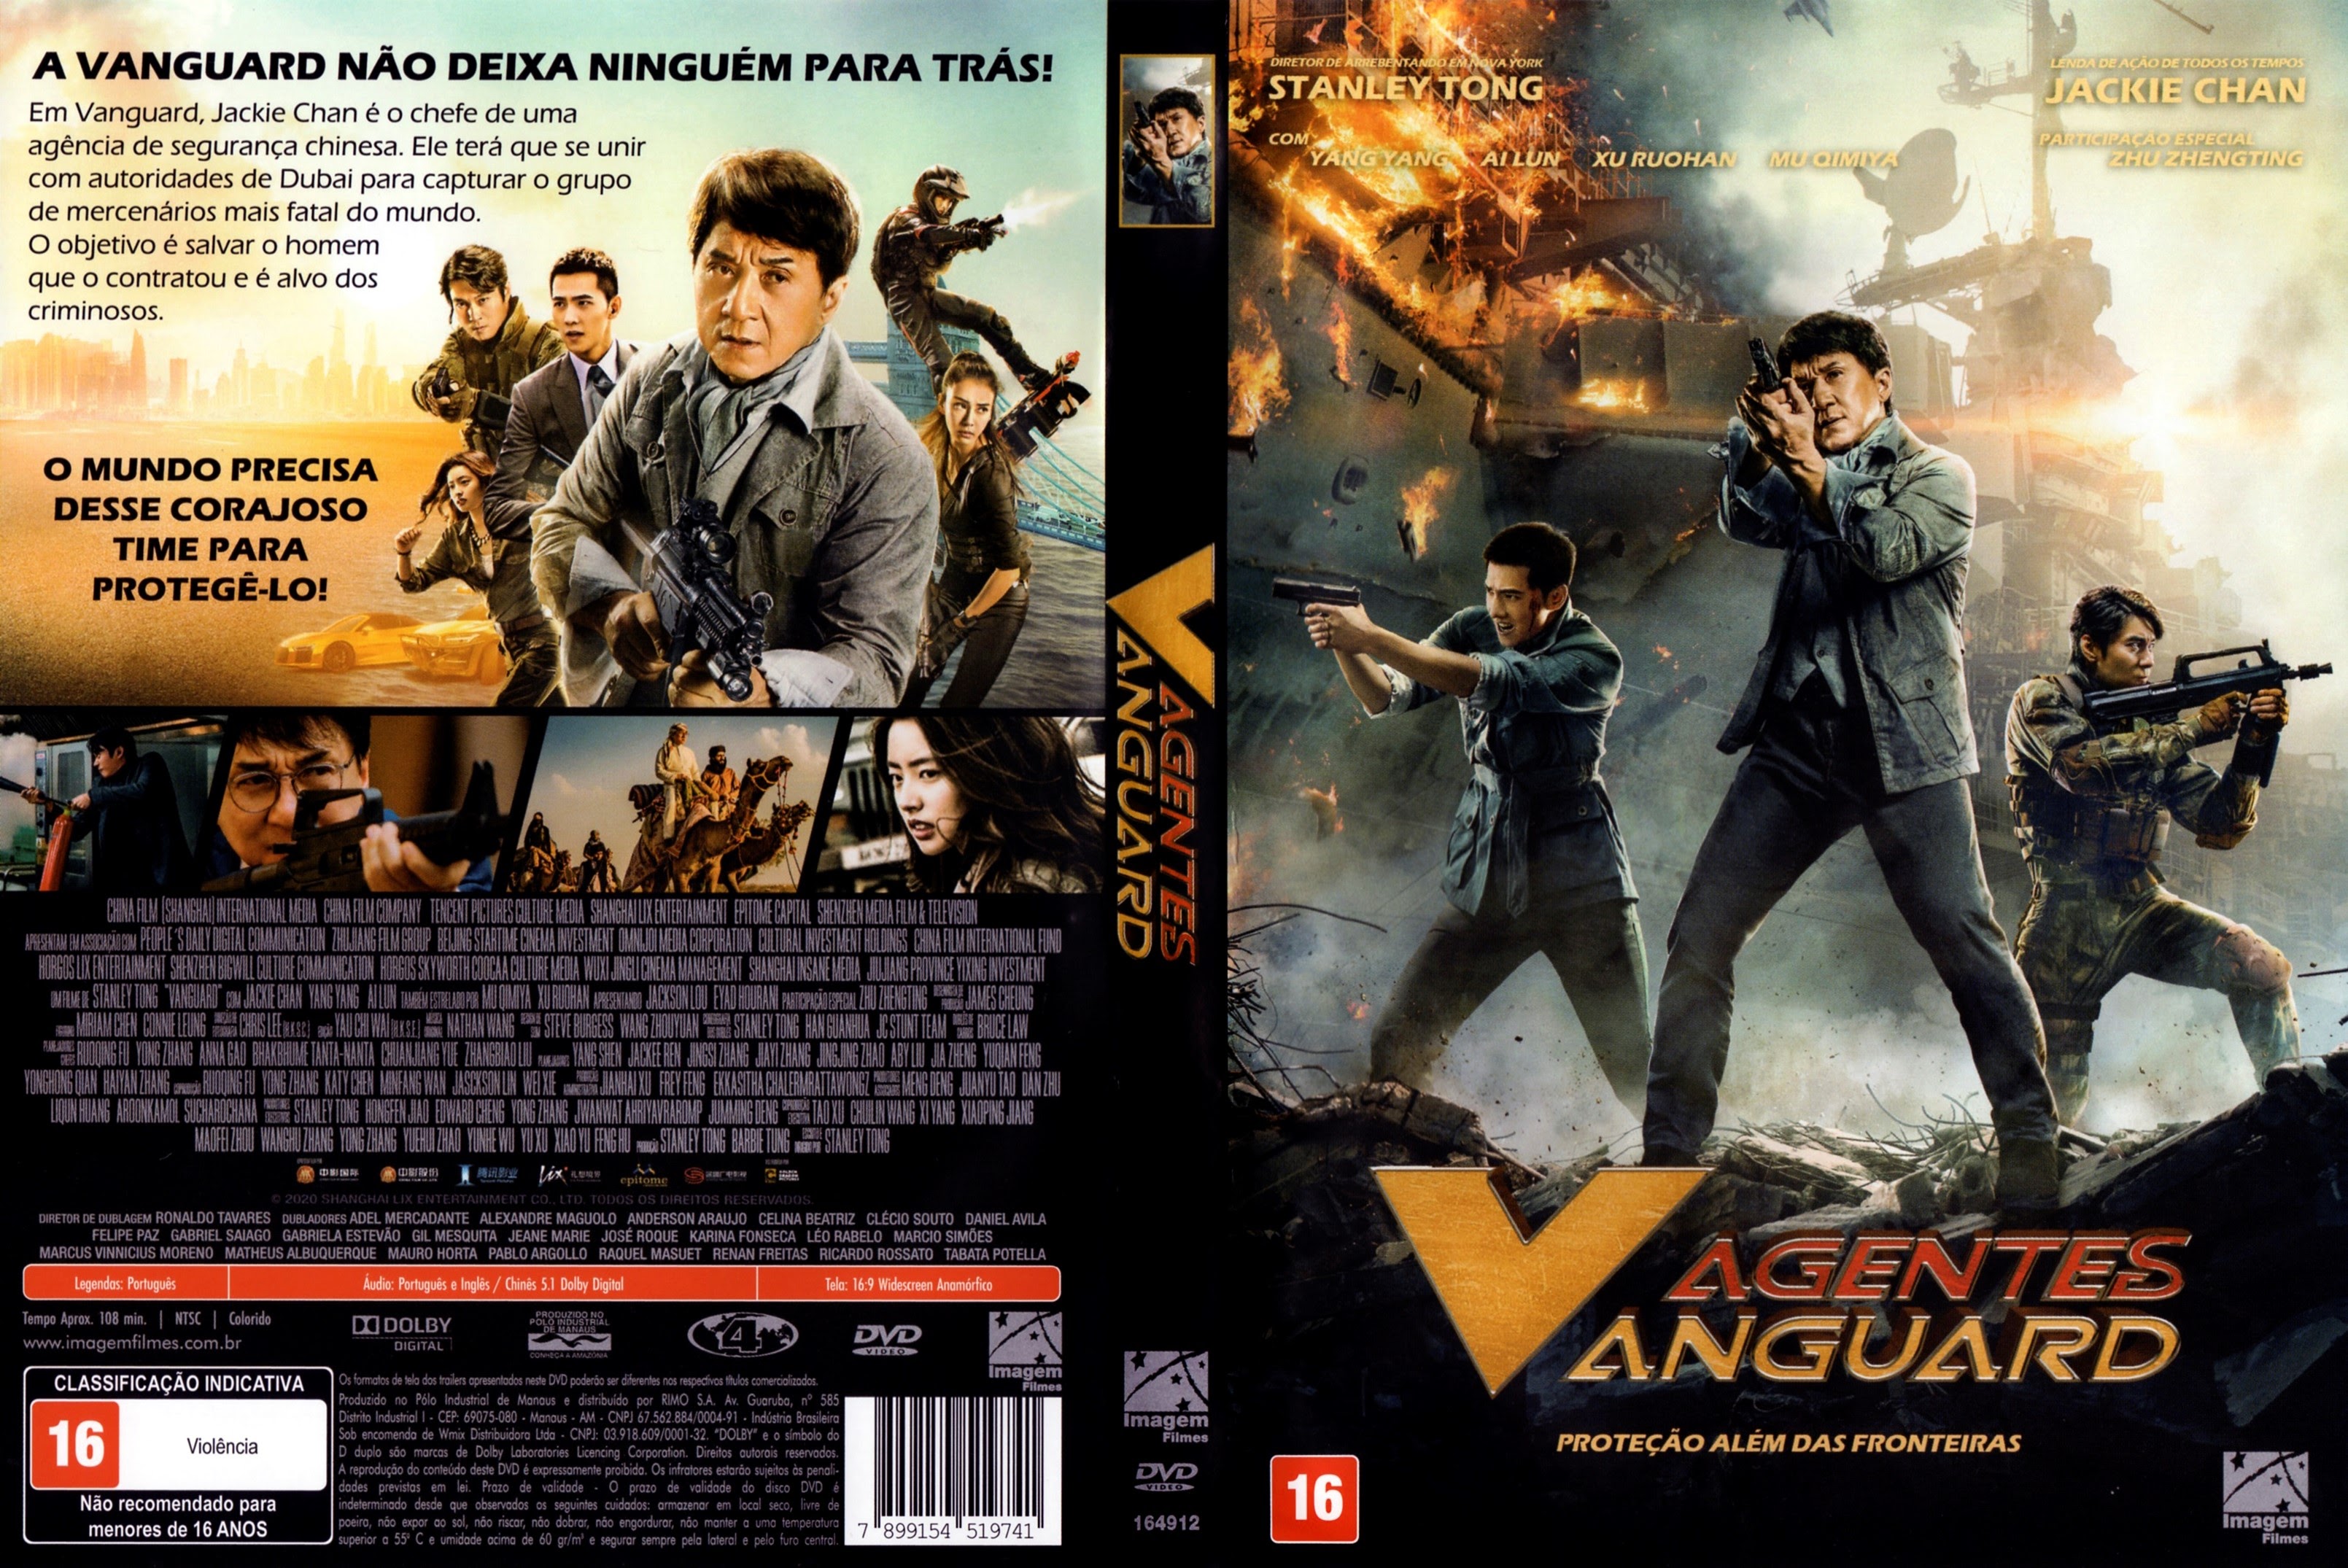 Agentes Vanguard (Filme), Trailer, Sinopse e Curiosidades - Cinema10